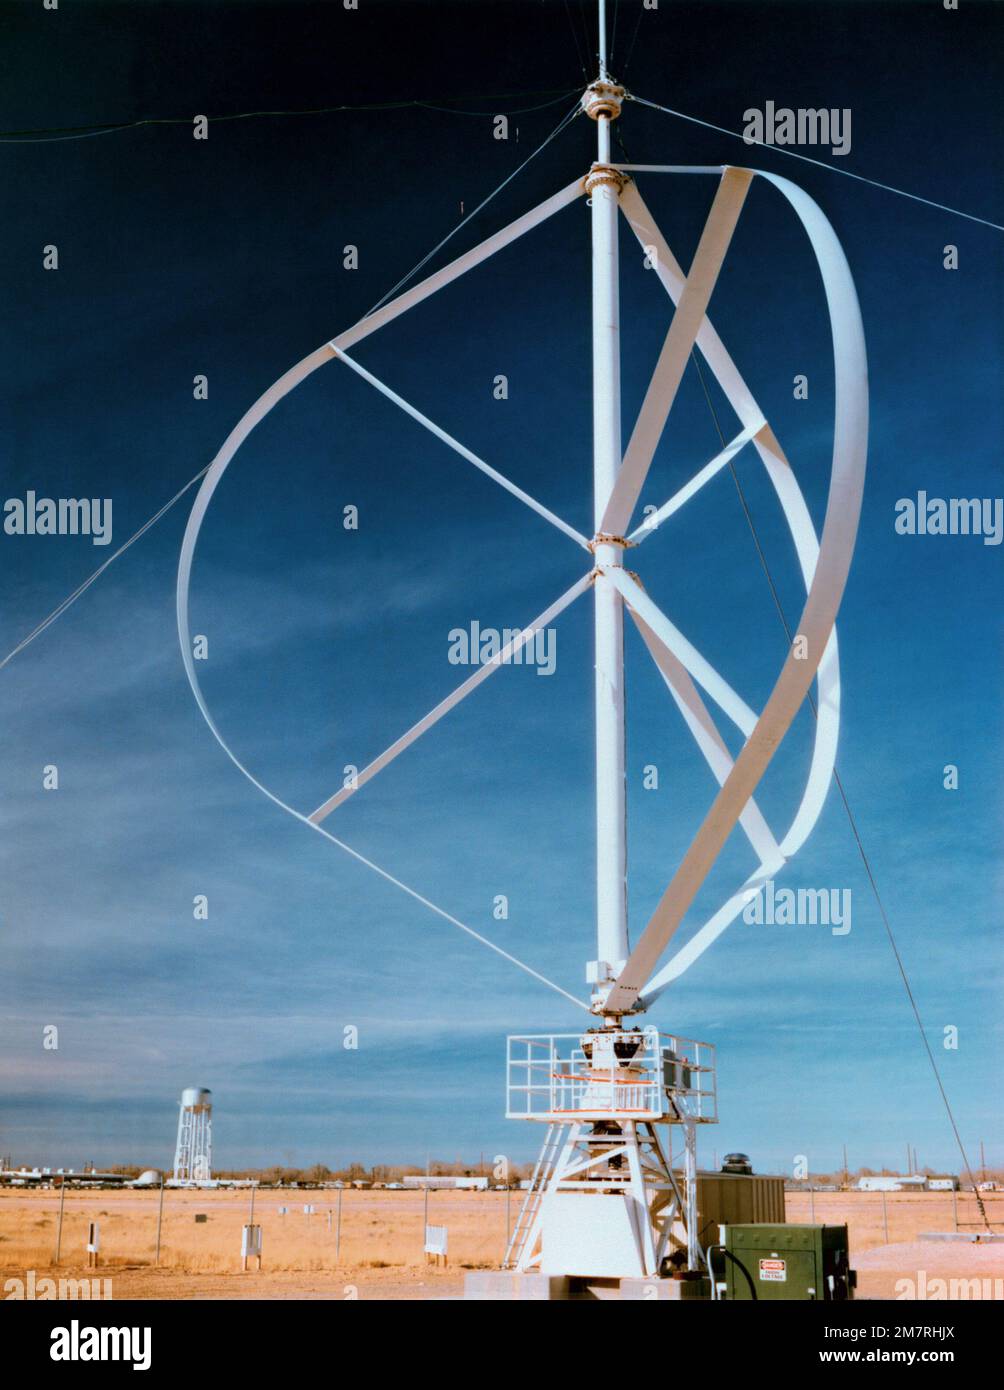 Una vista di una turbina eolica ad asse verticale del progetto Darrieus. Questa macchina è alta 17 metri e produce fino a 150 kilowatt di energia eolica. Stato: New Mexico (NM) Paese: Stati Uniti d'America (USA) Foto Stock